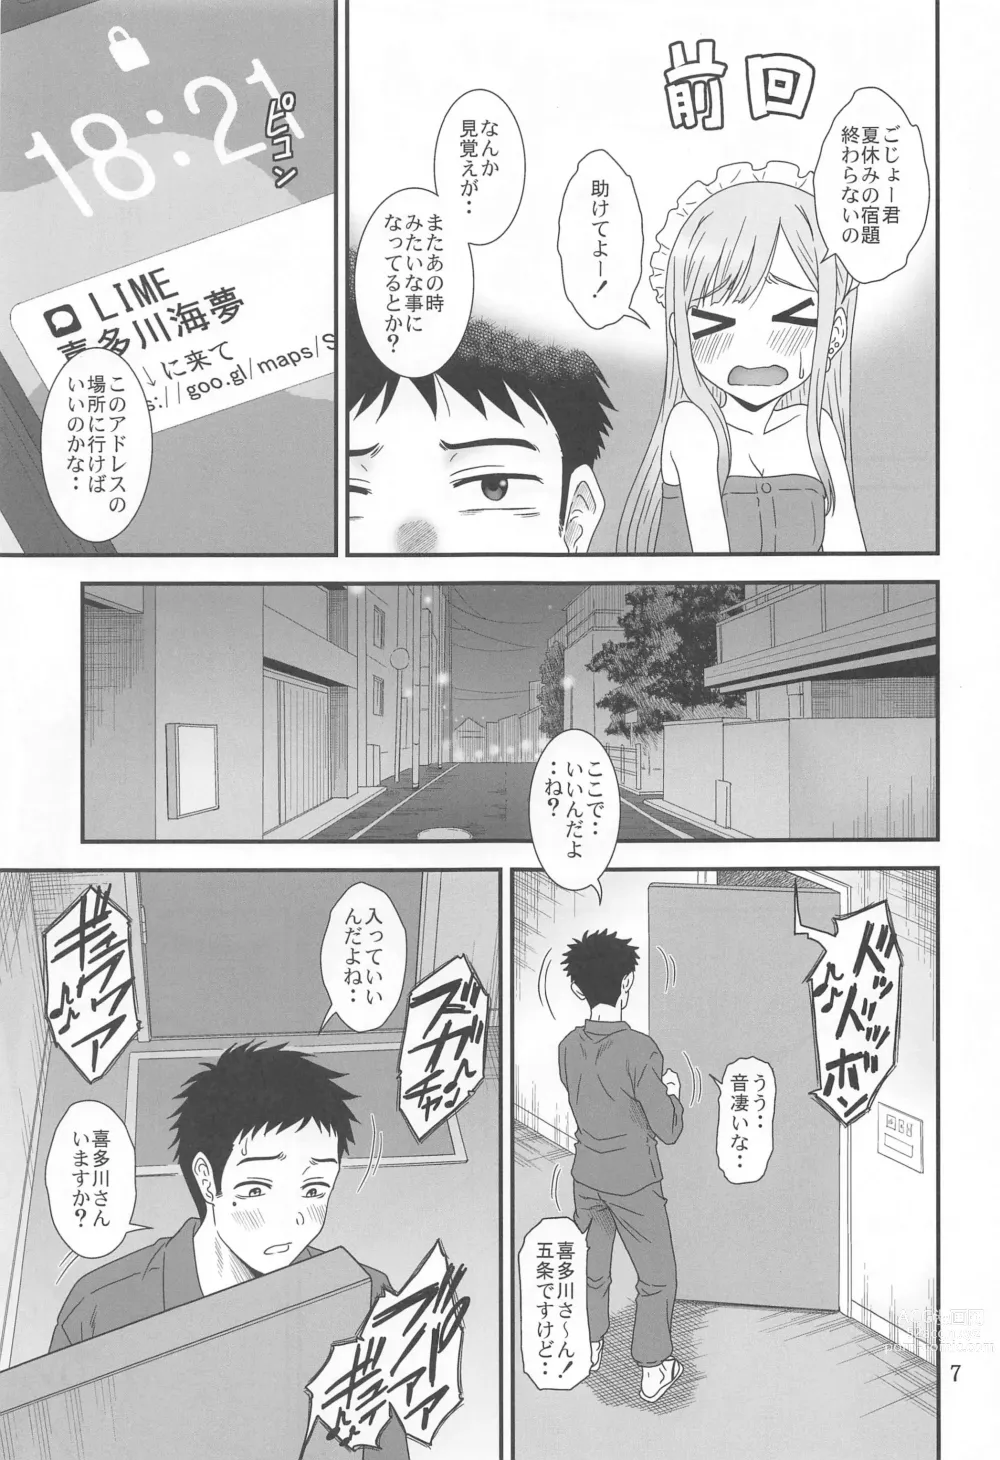 Page 6 of doujinshi Kugutsu Mawashi